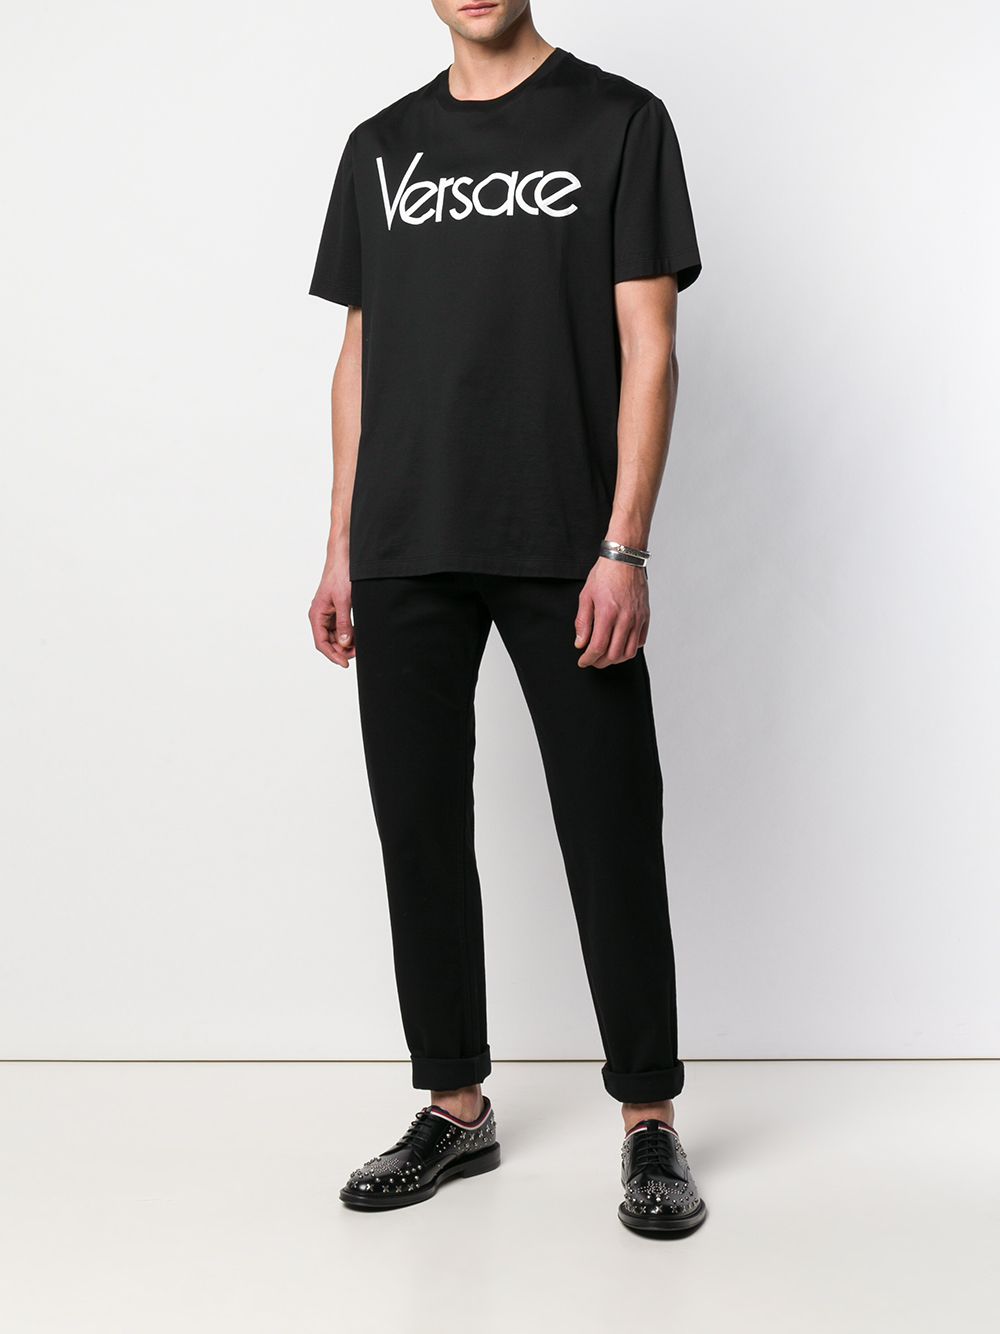 фото Versace прямые джинсы